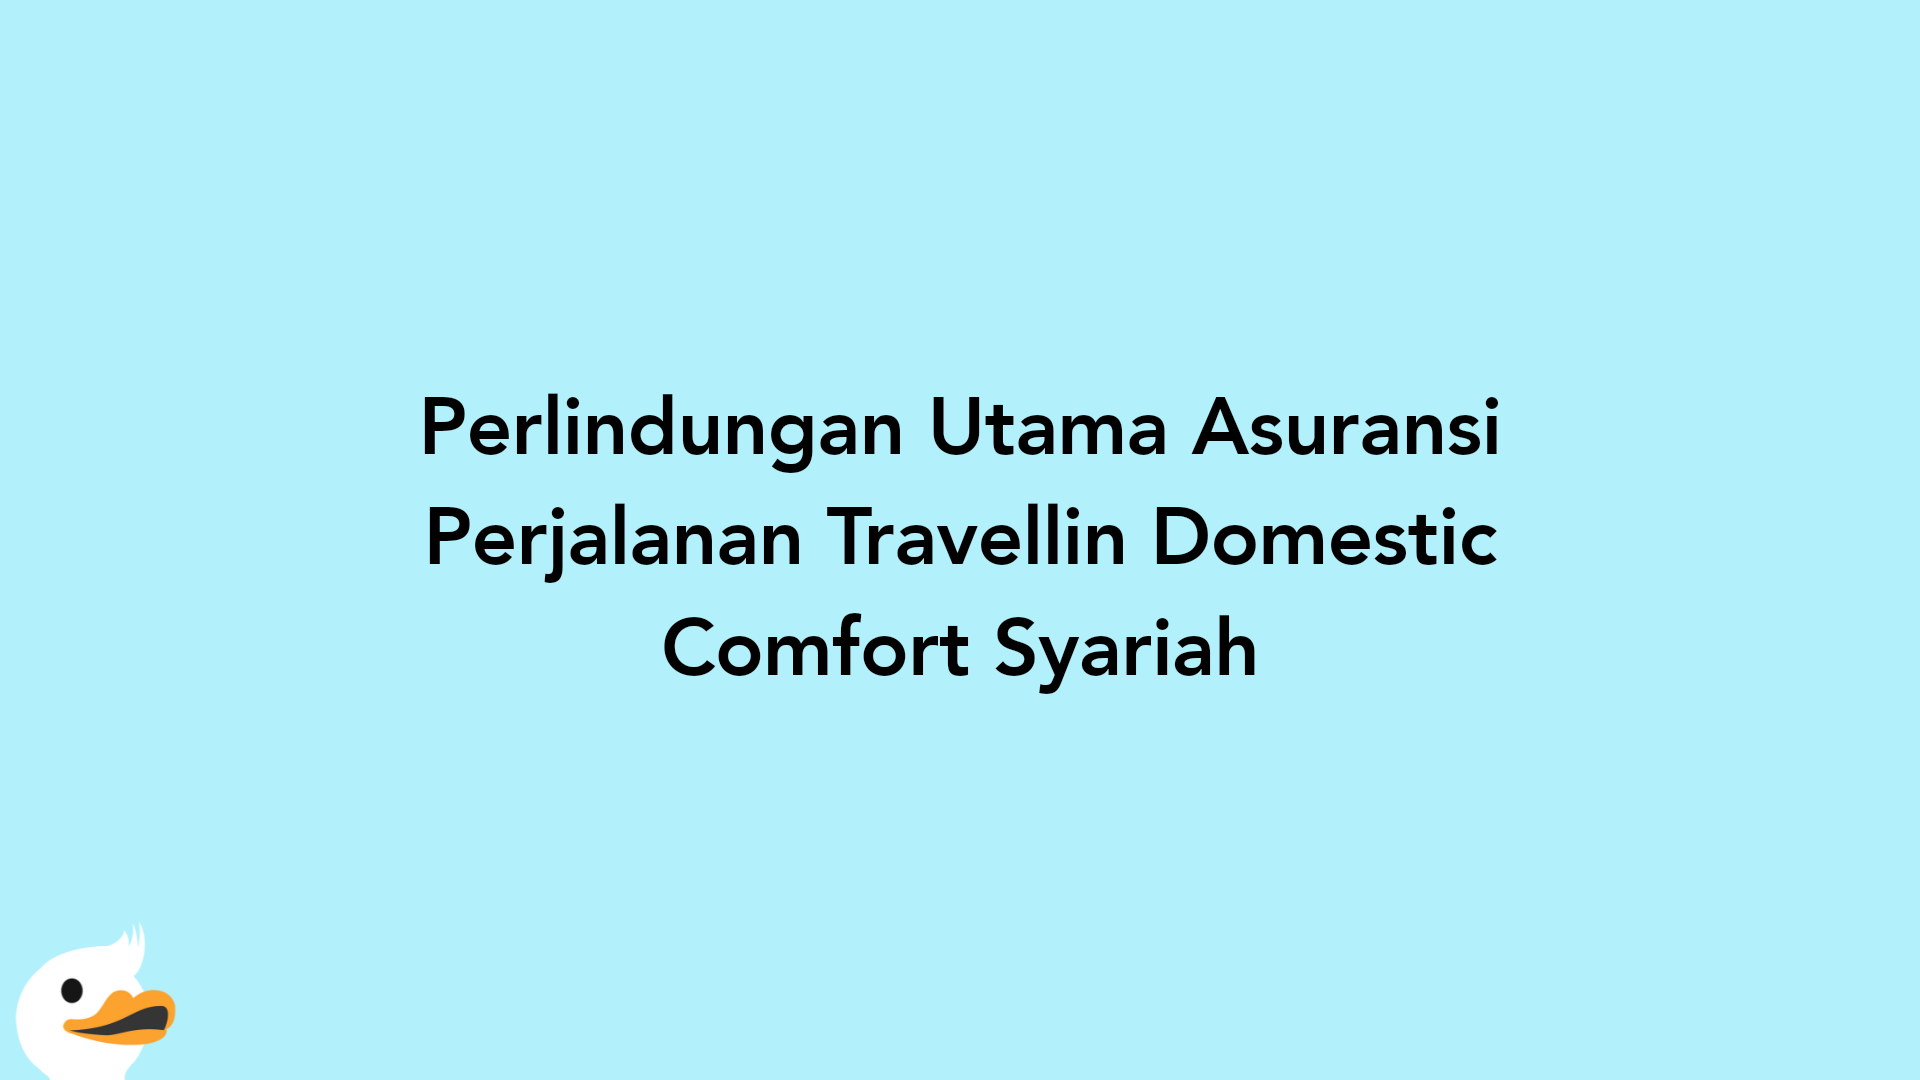 Perlindungan Utama Asuransi Perjalanan Travellin Domestic Comfort Syariah